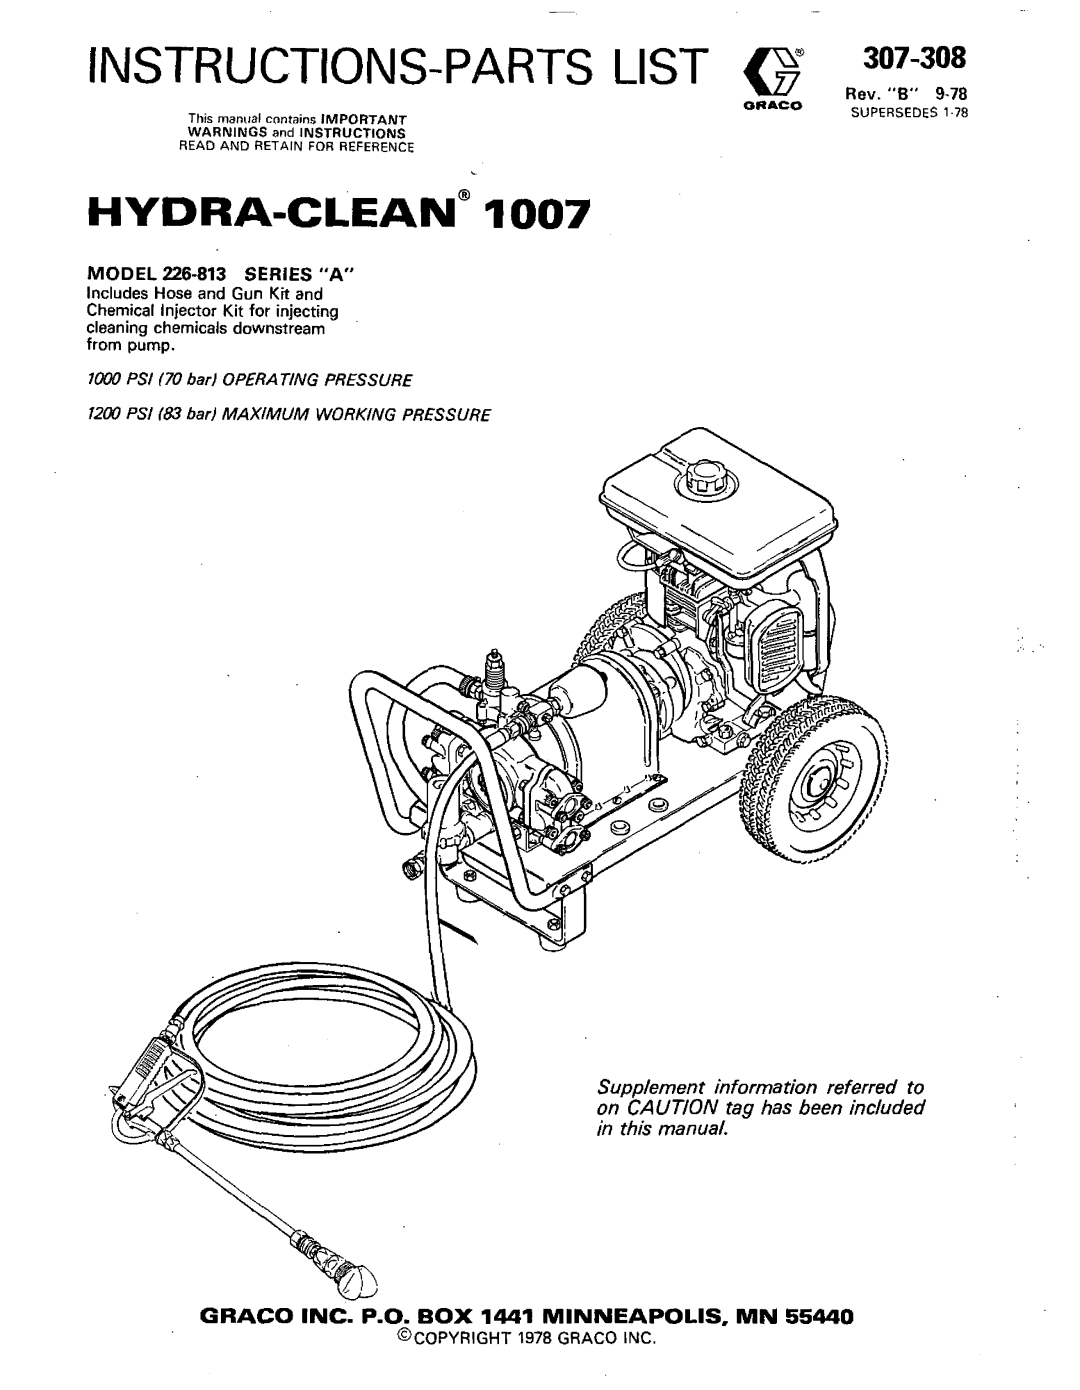 Graco Inc 307-308 manual MODEL 226-813 SERIES A, Rev, l d w PSI I70 barl OPERATING PRESSURE, @COPYRIGHT 1978 GRACO INC 